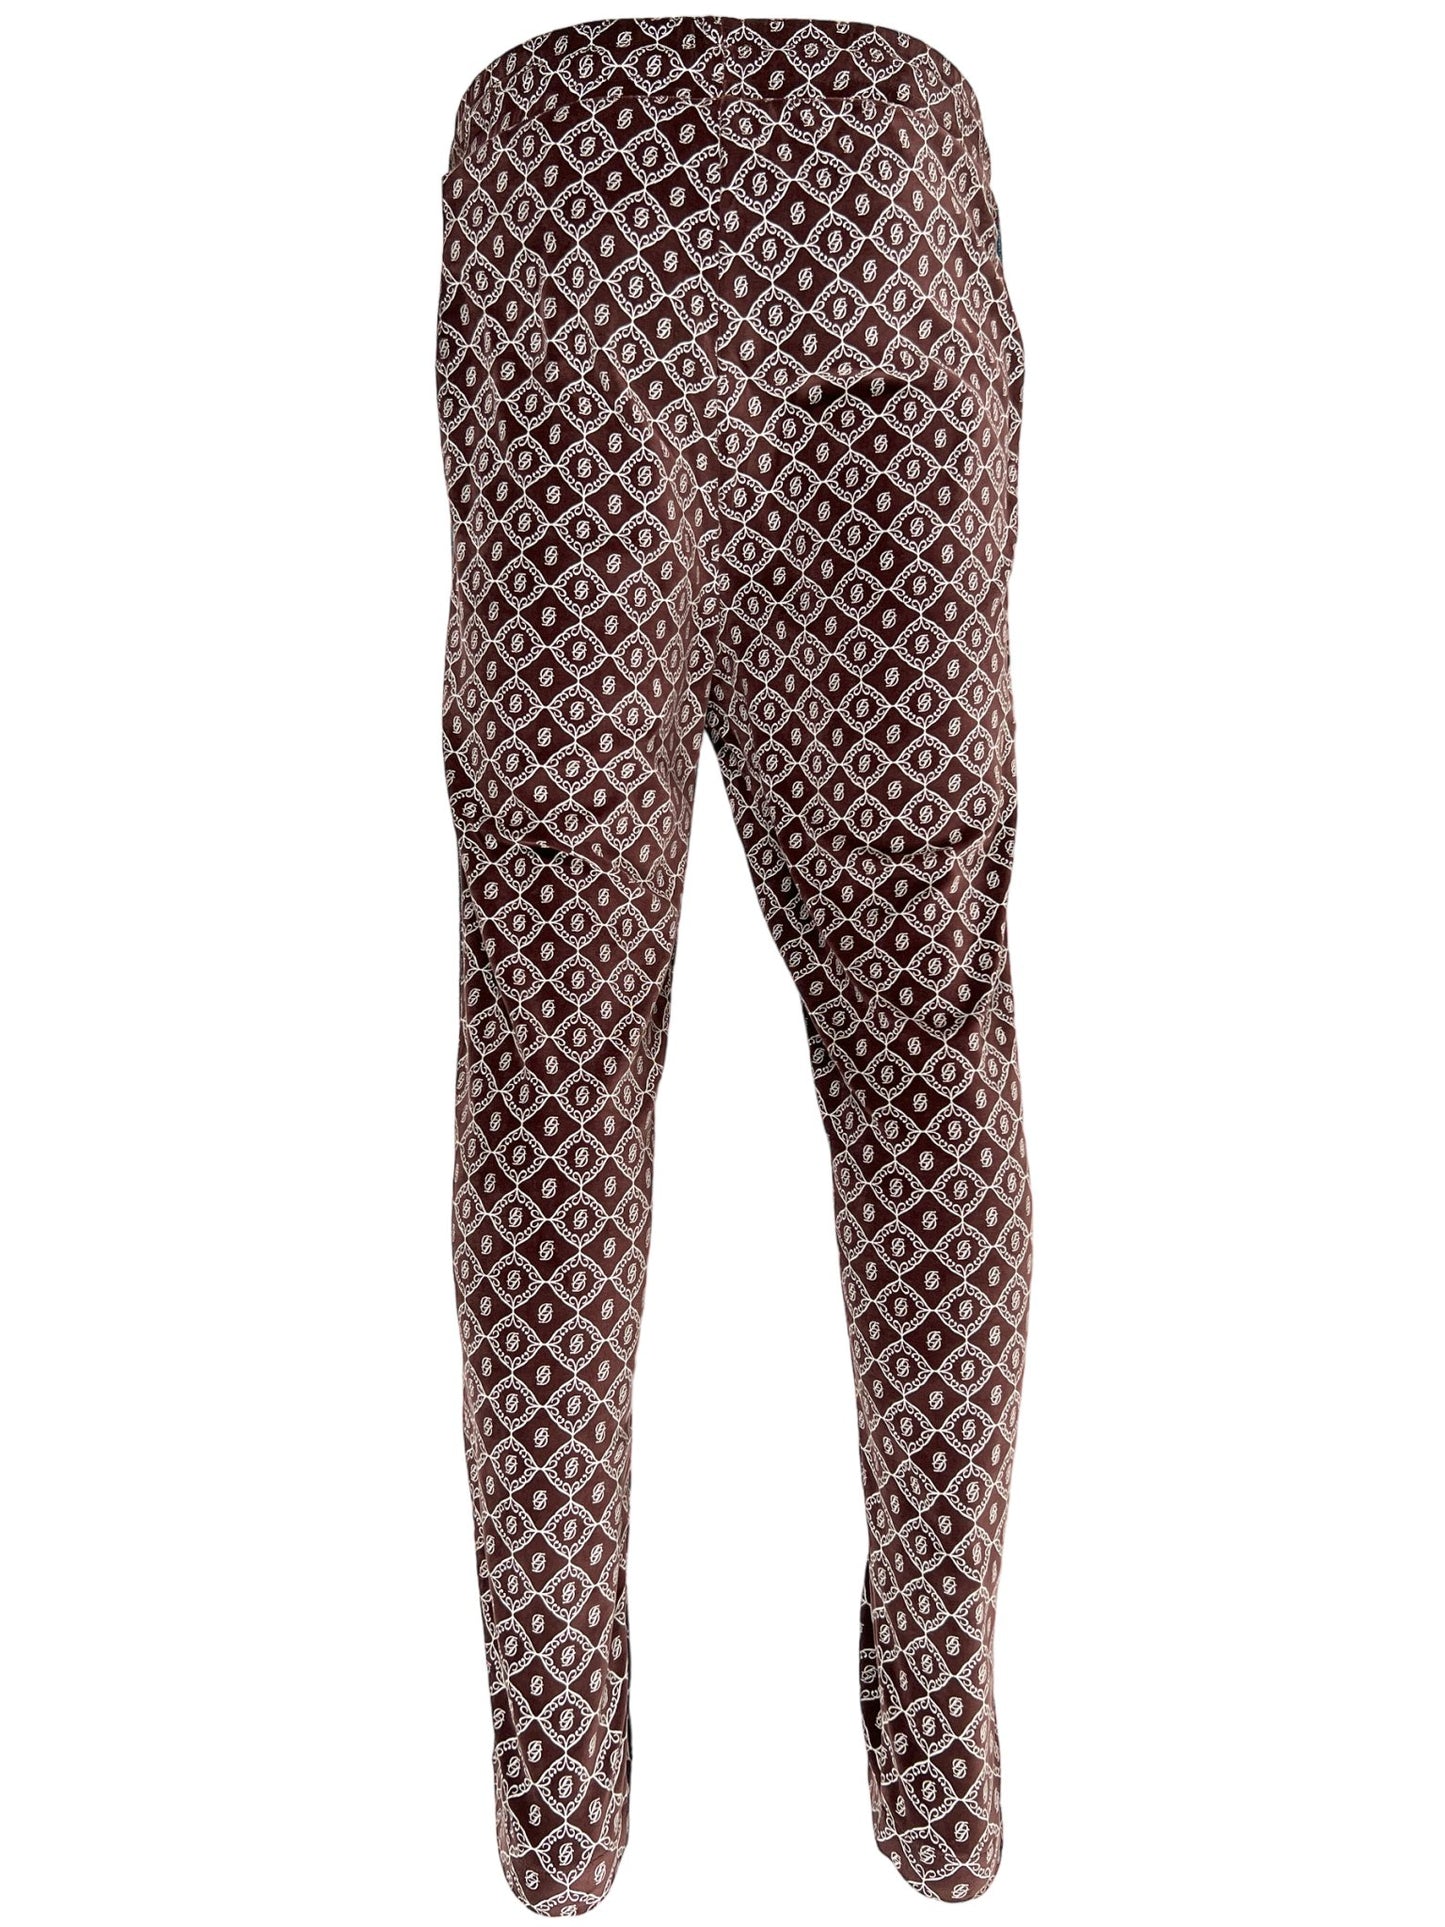 A women's brown and white patterned DROLE DE MONSIEUR PANT C-BP137-CO008-BN jogging pants.